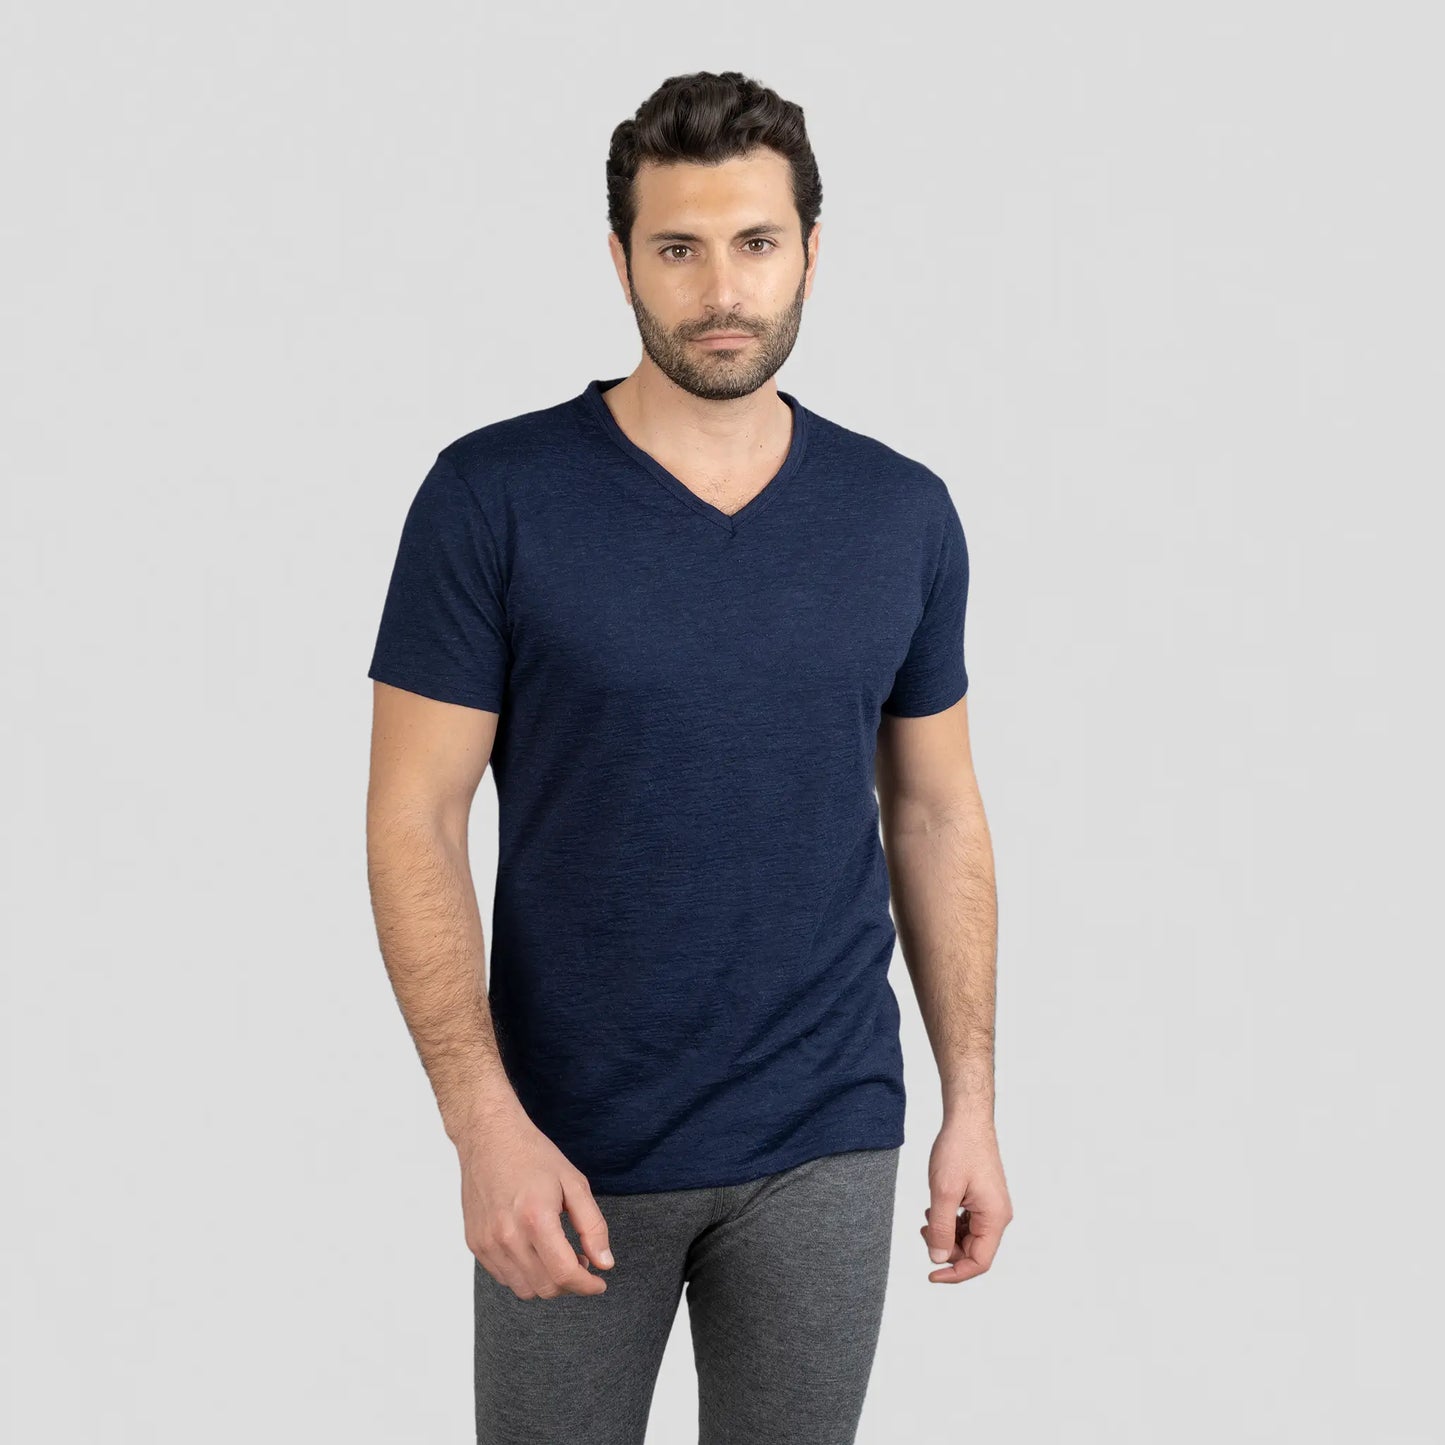 mens versatile design vneck tshirt color navy blue